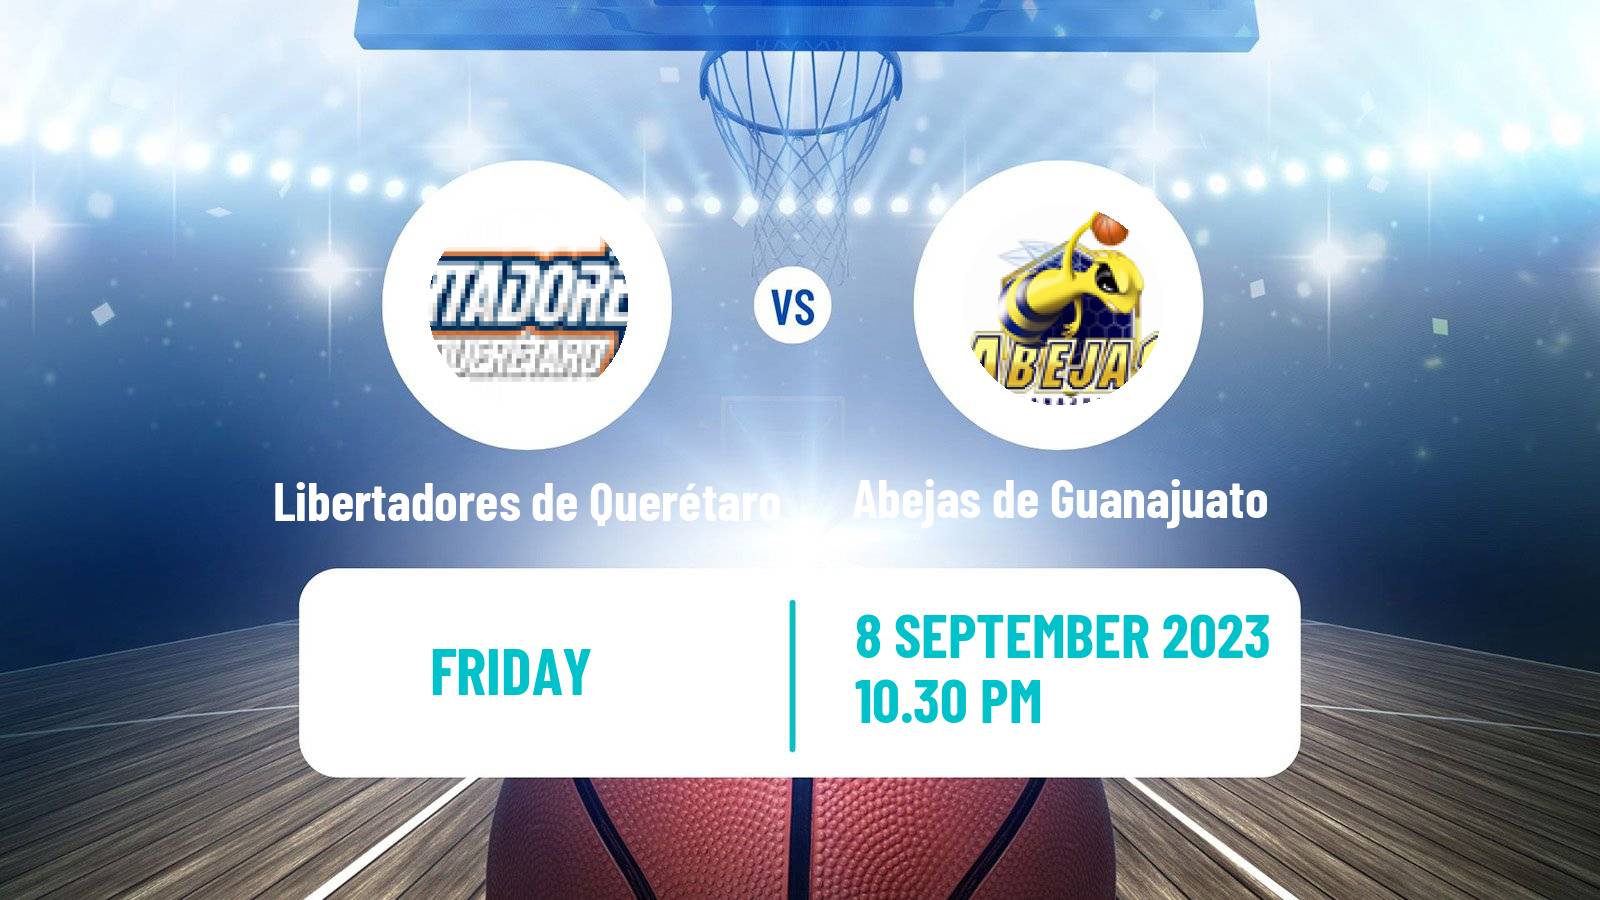 Basketball Mexican LNBP Libertadores de Querétaro - Abejas de Guanajuato